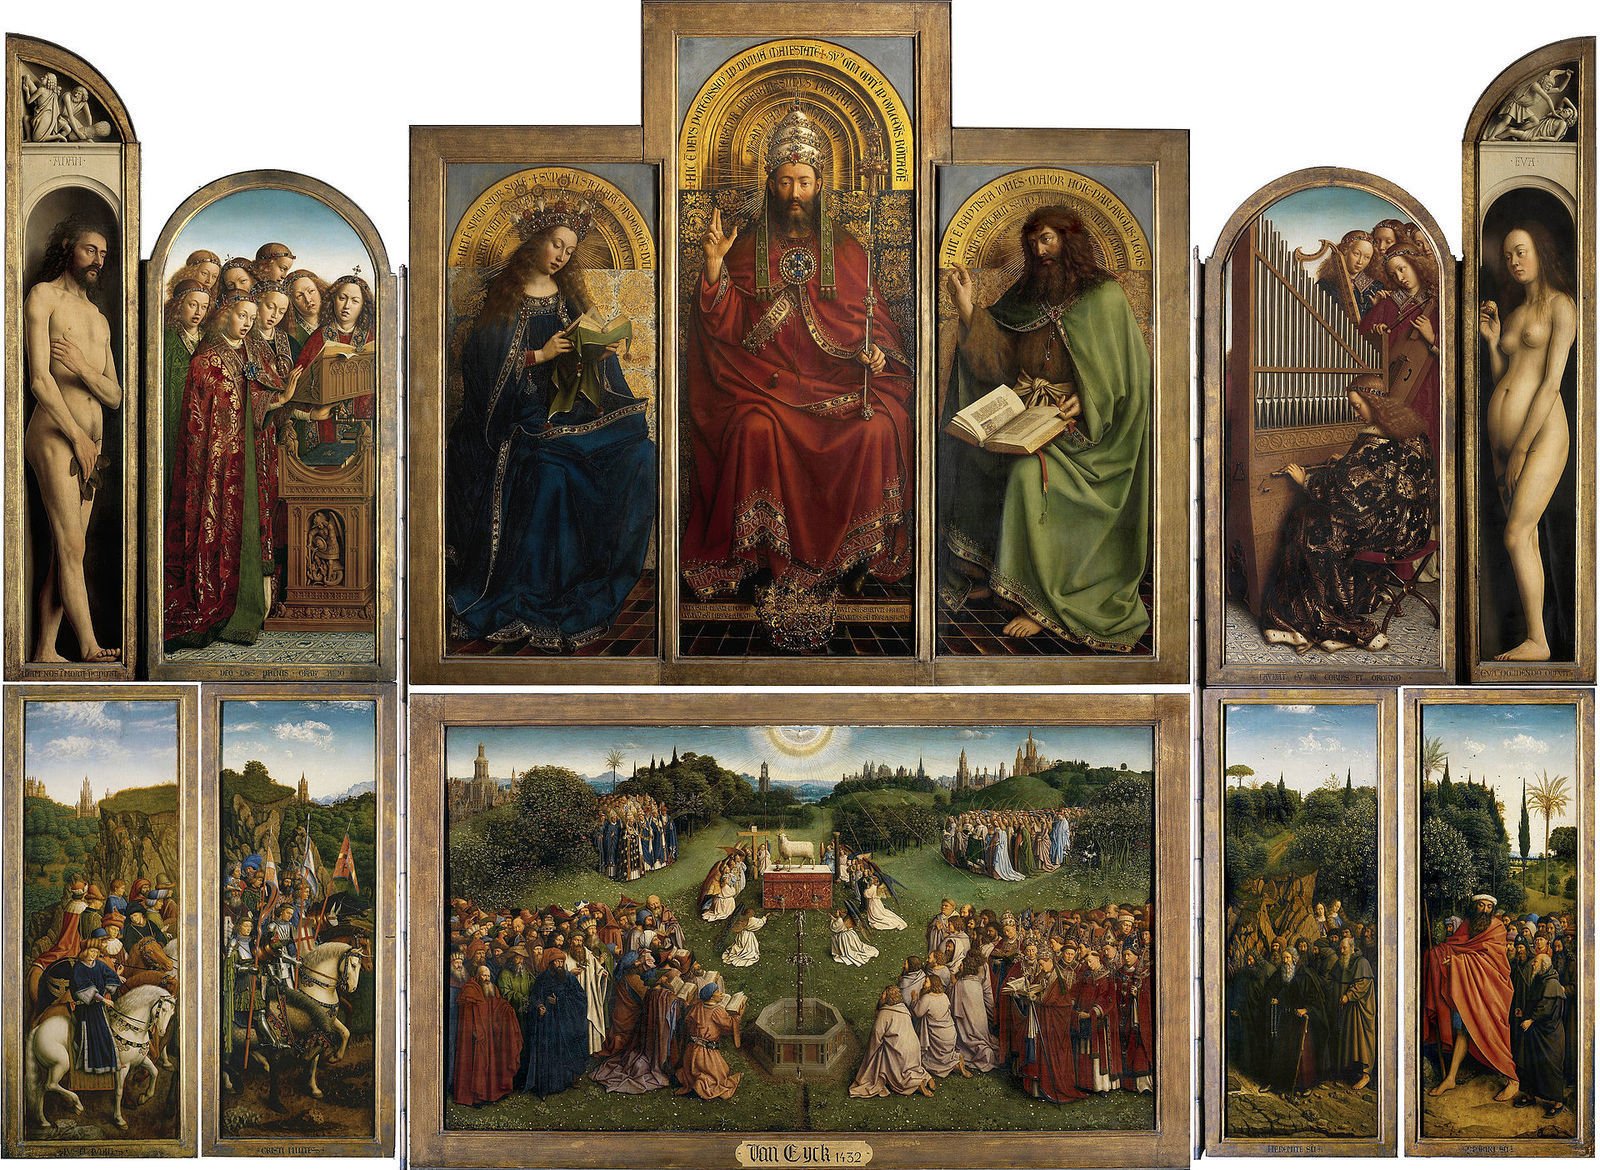 Hubert van Eyck,Jan van Eyck, Ghent Altarpiece, 1432. Saint Bavo Cathedral, Ghent, Belgium